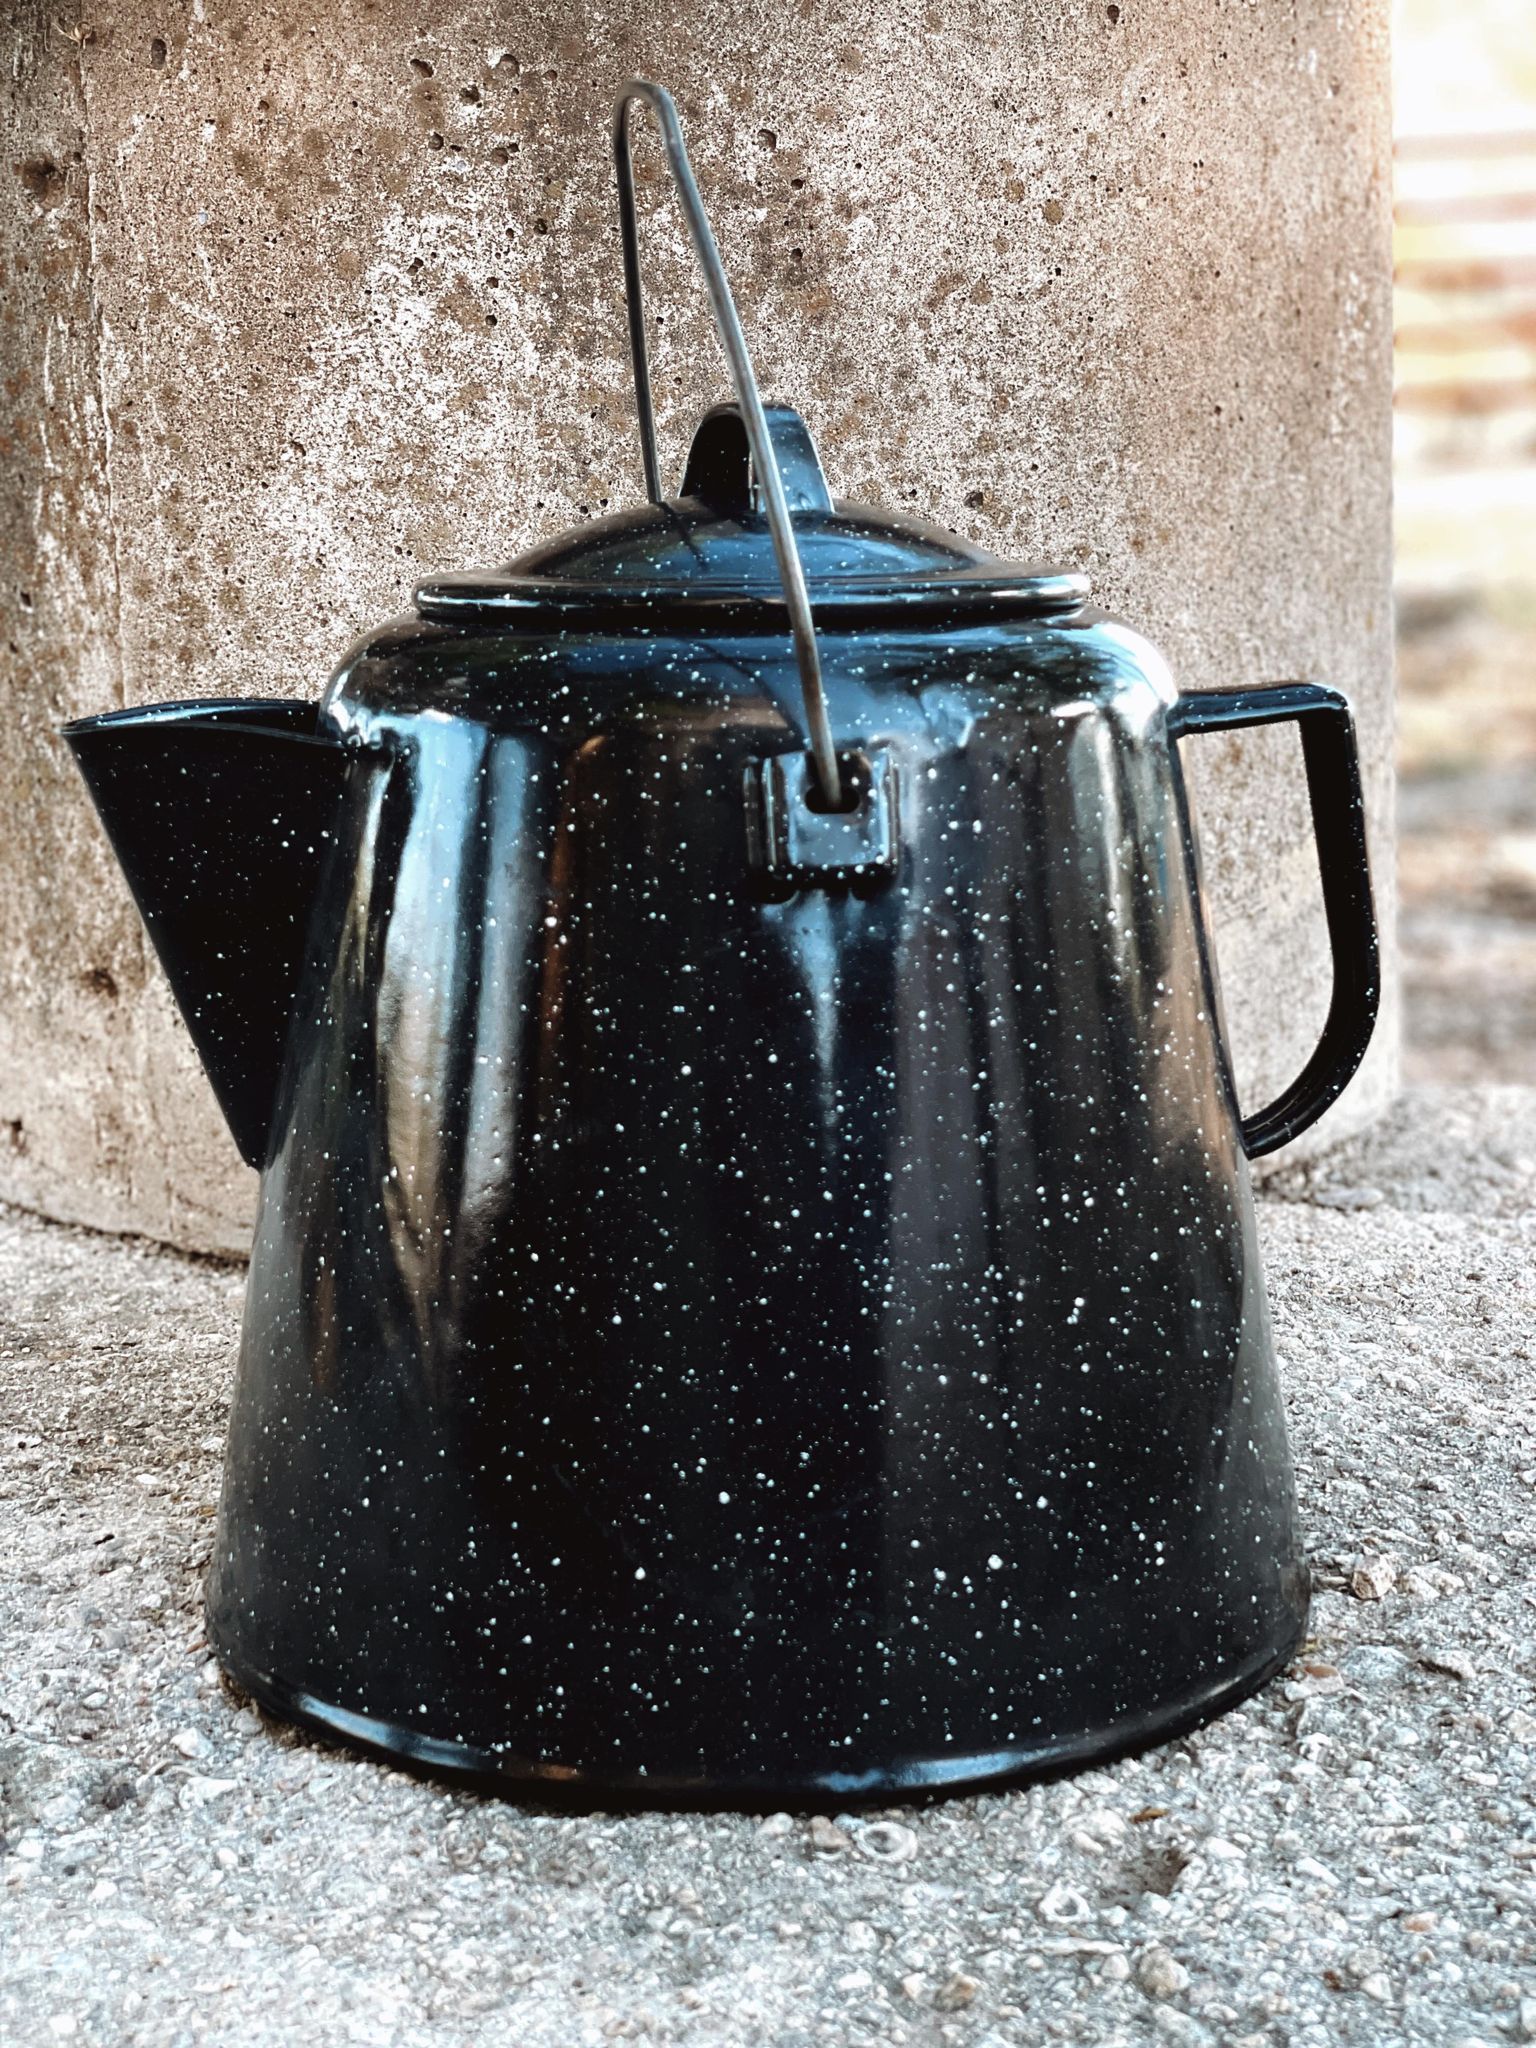 Cast Iron Coffee Pot 